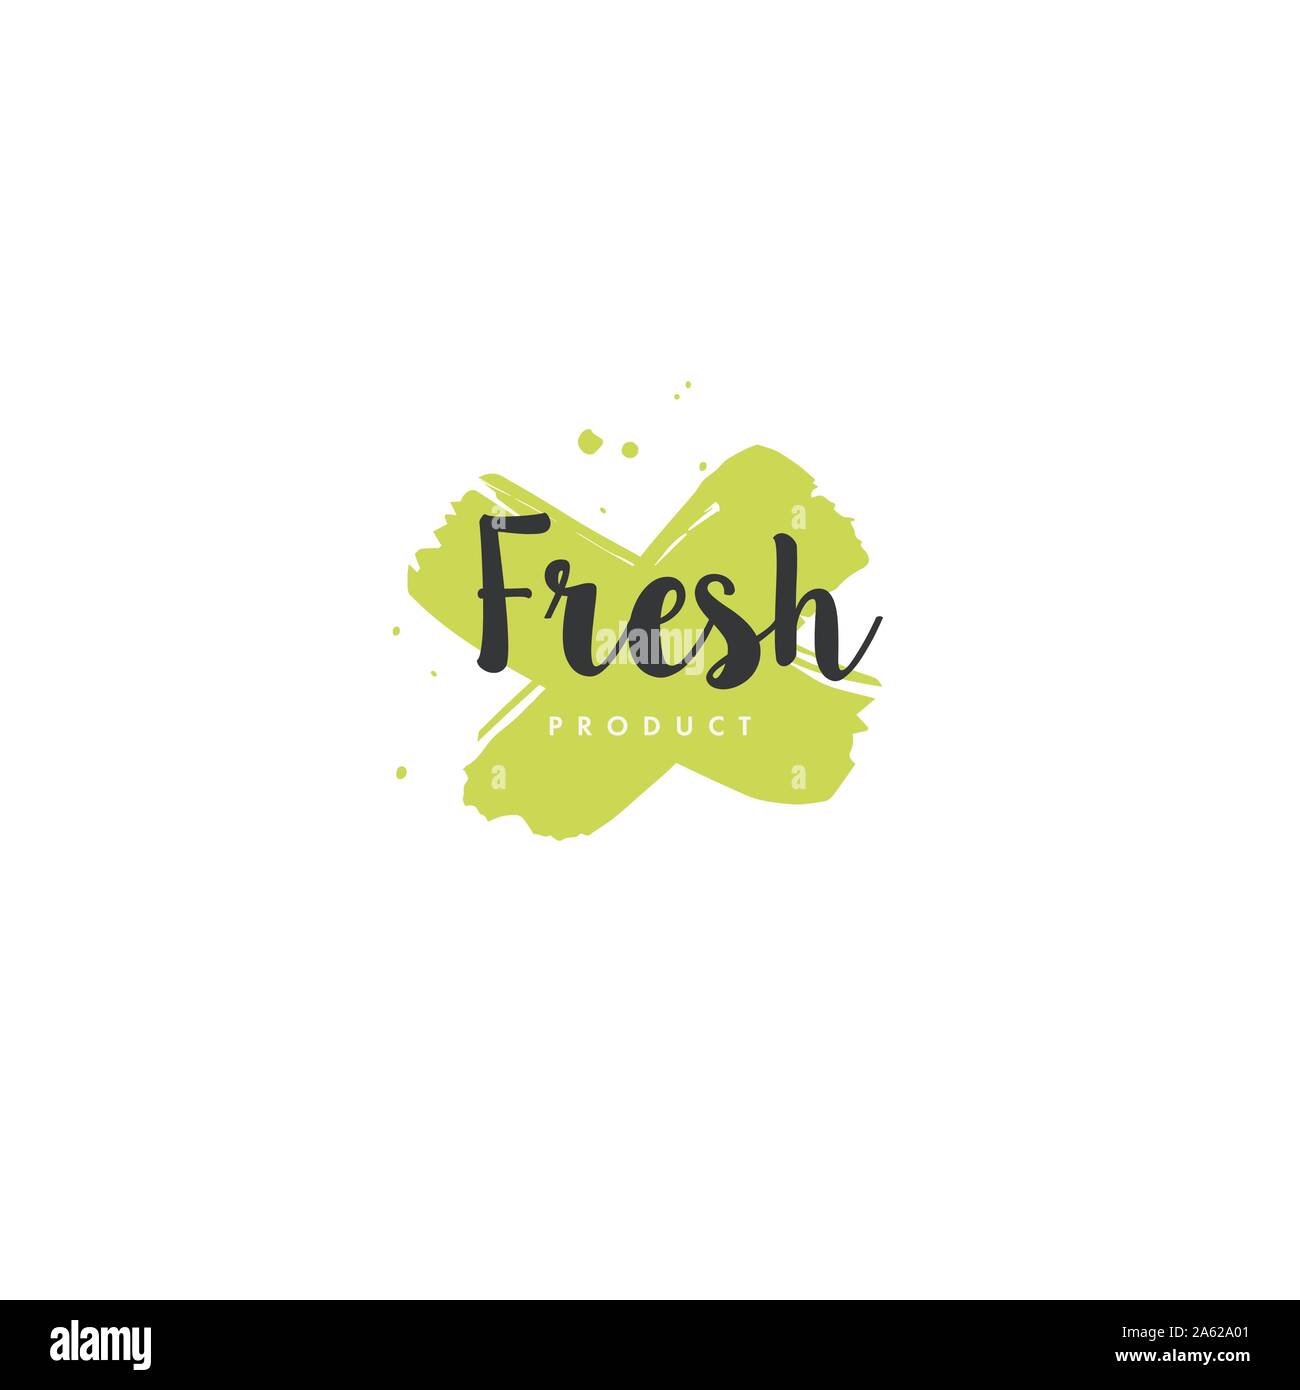 Freash Produkt-Icons und Elemente-Kollektion für den Lebensmittelmarkt, E-Commerce, Bio-Produkte Förderung, gesundes Leben und hochwertige Lebensmittel und Getränke. Stock Vektor